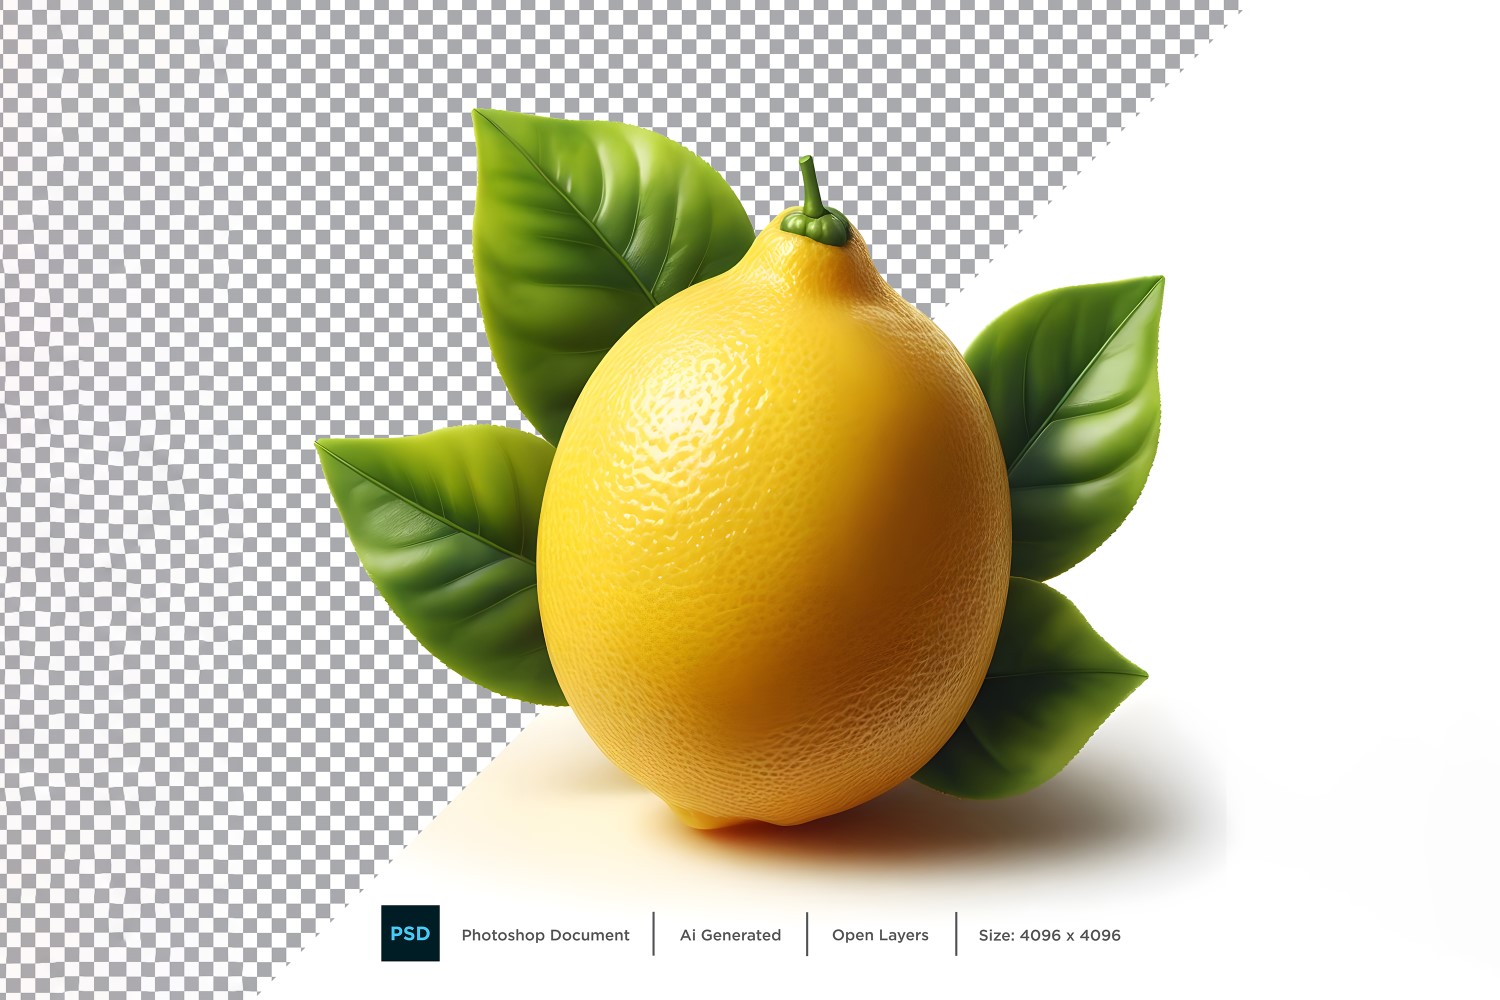 Lemon Fresh fruit isolated on white background 5